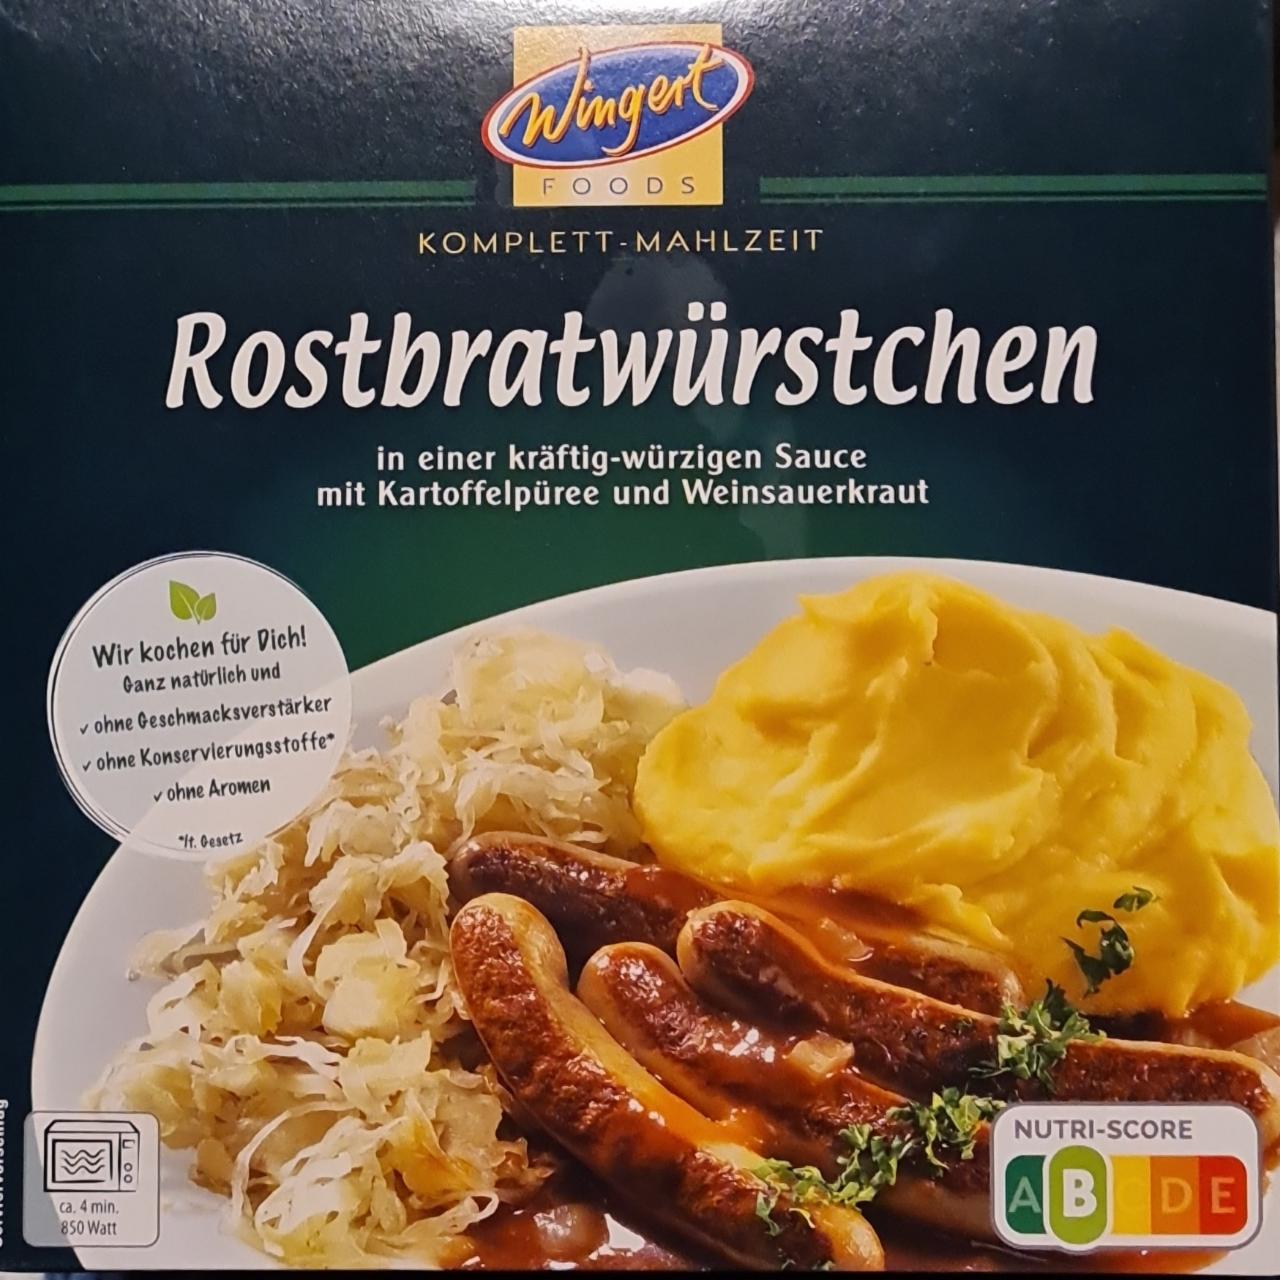 Fotografie - Rostbratwürstchen in Sauce mit Kartoffelpüree und Weinsauerkraut Wingert